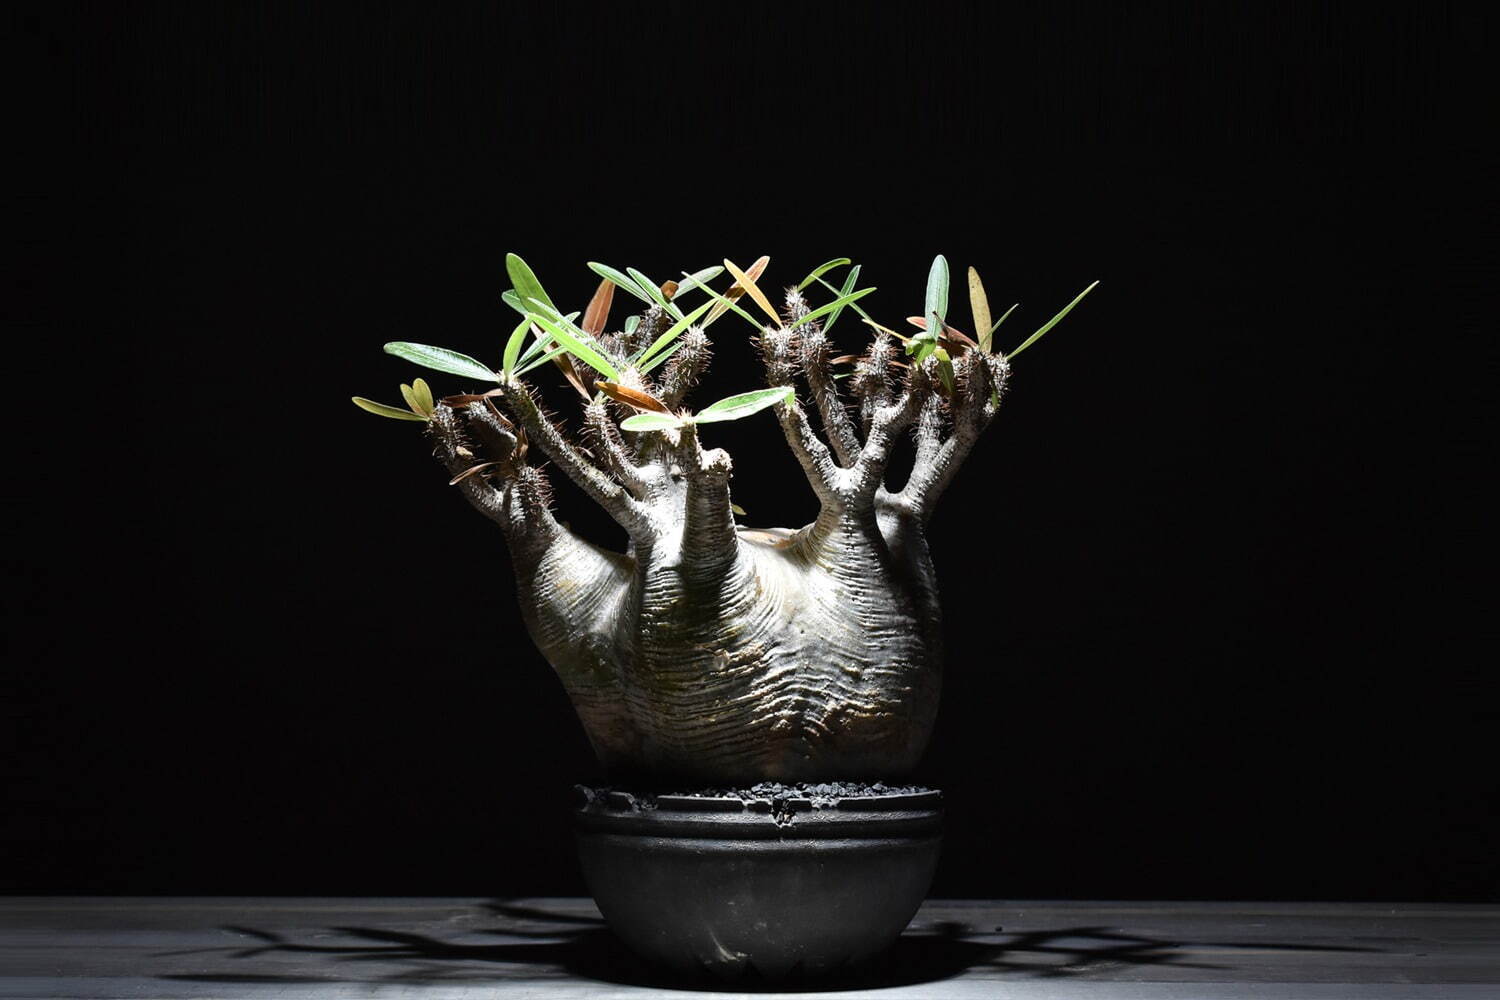 ハチラボ植木鉢×ラフラムコラボセット
パキポディウム・グラキリス 330,000円